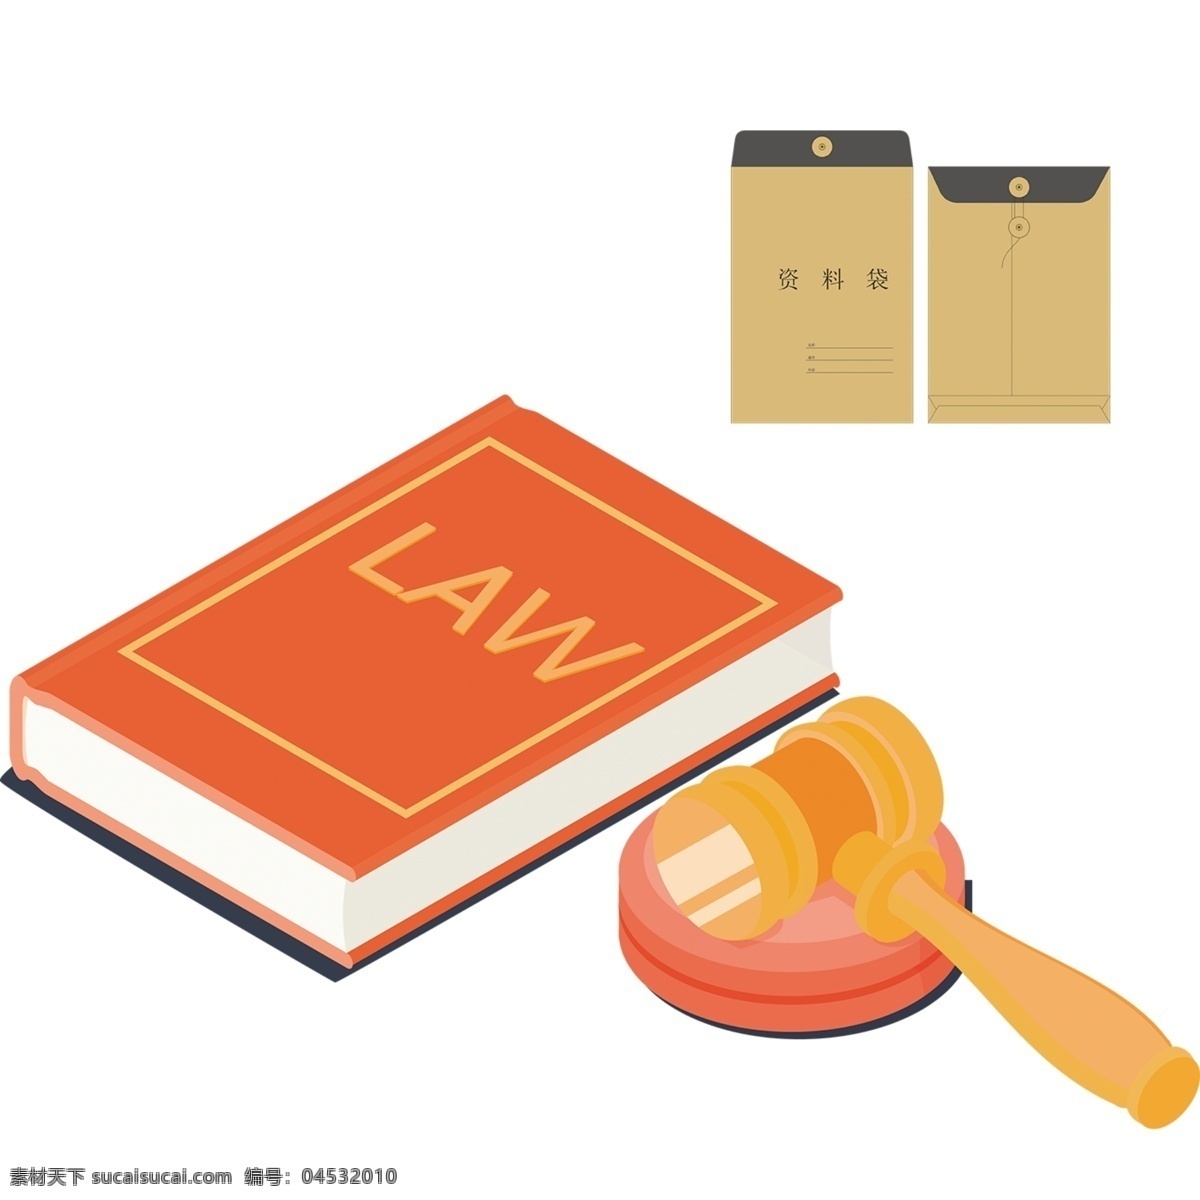 法律元素 资料袋 证件 法律 仲裁 审判 法律素材 证据 法治 法制 依法治国